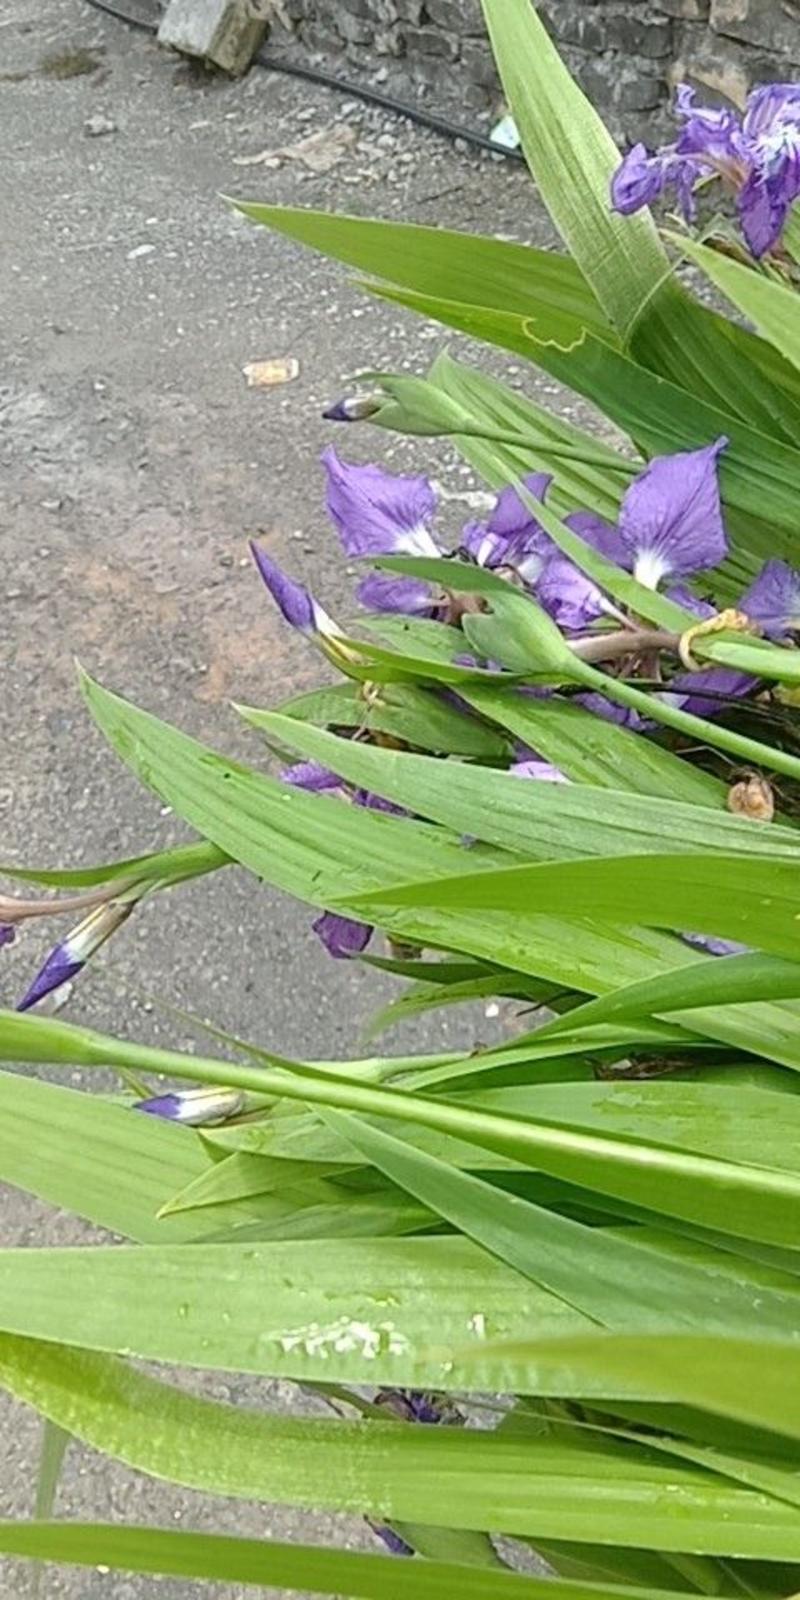 扁竹兰扁竹根蝴蝶兰苗鸢尾紫色兰花又名鸢尾当年开花苗繁殖快